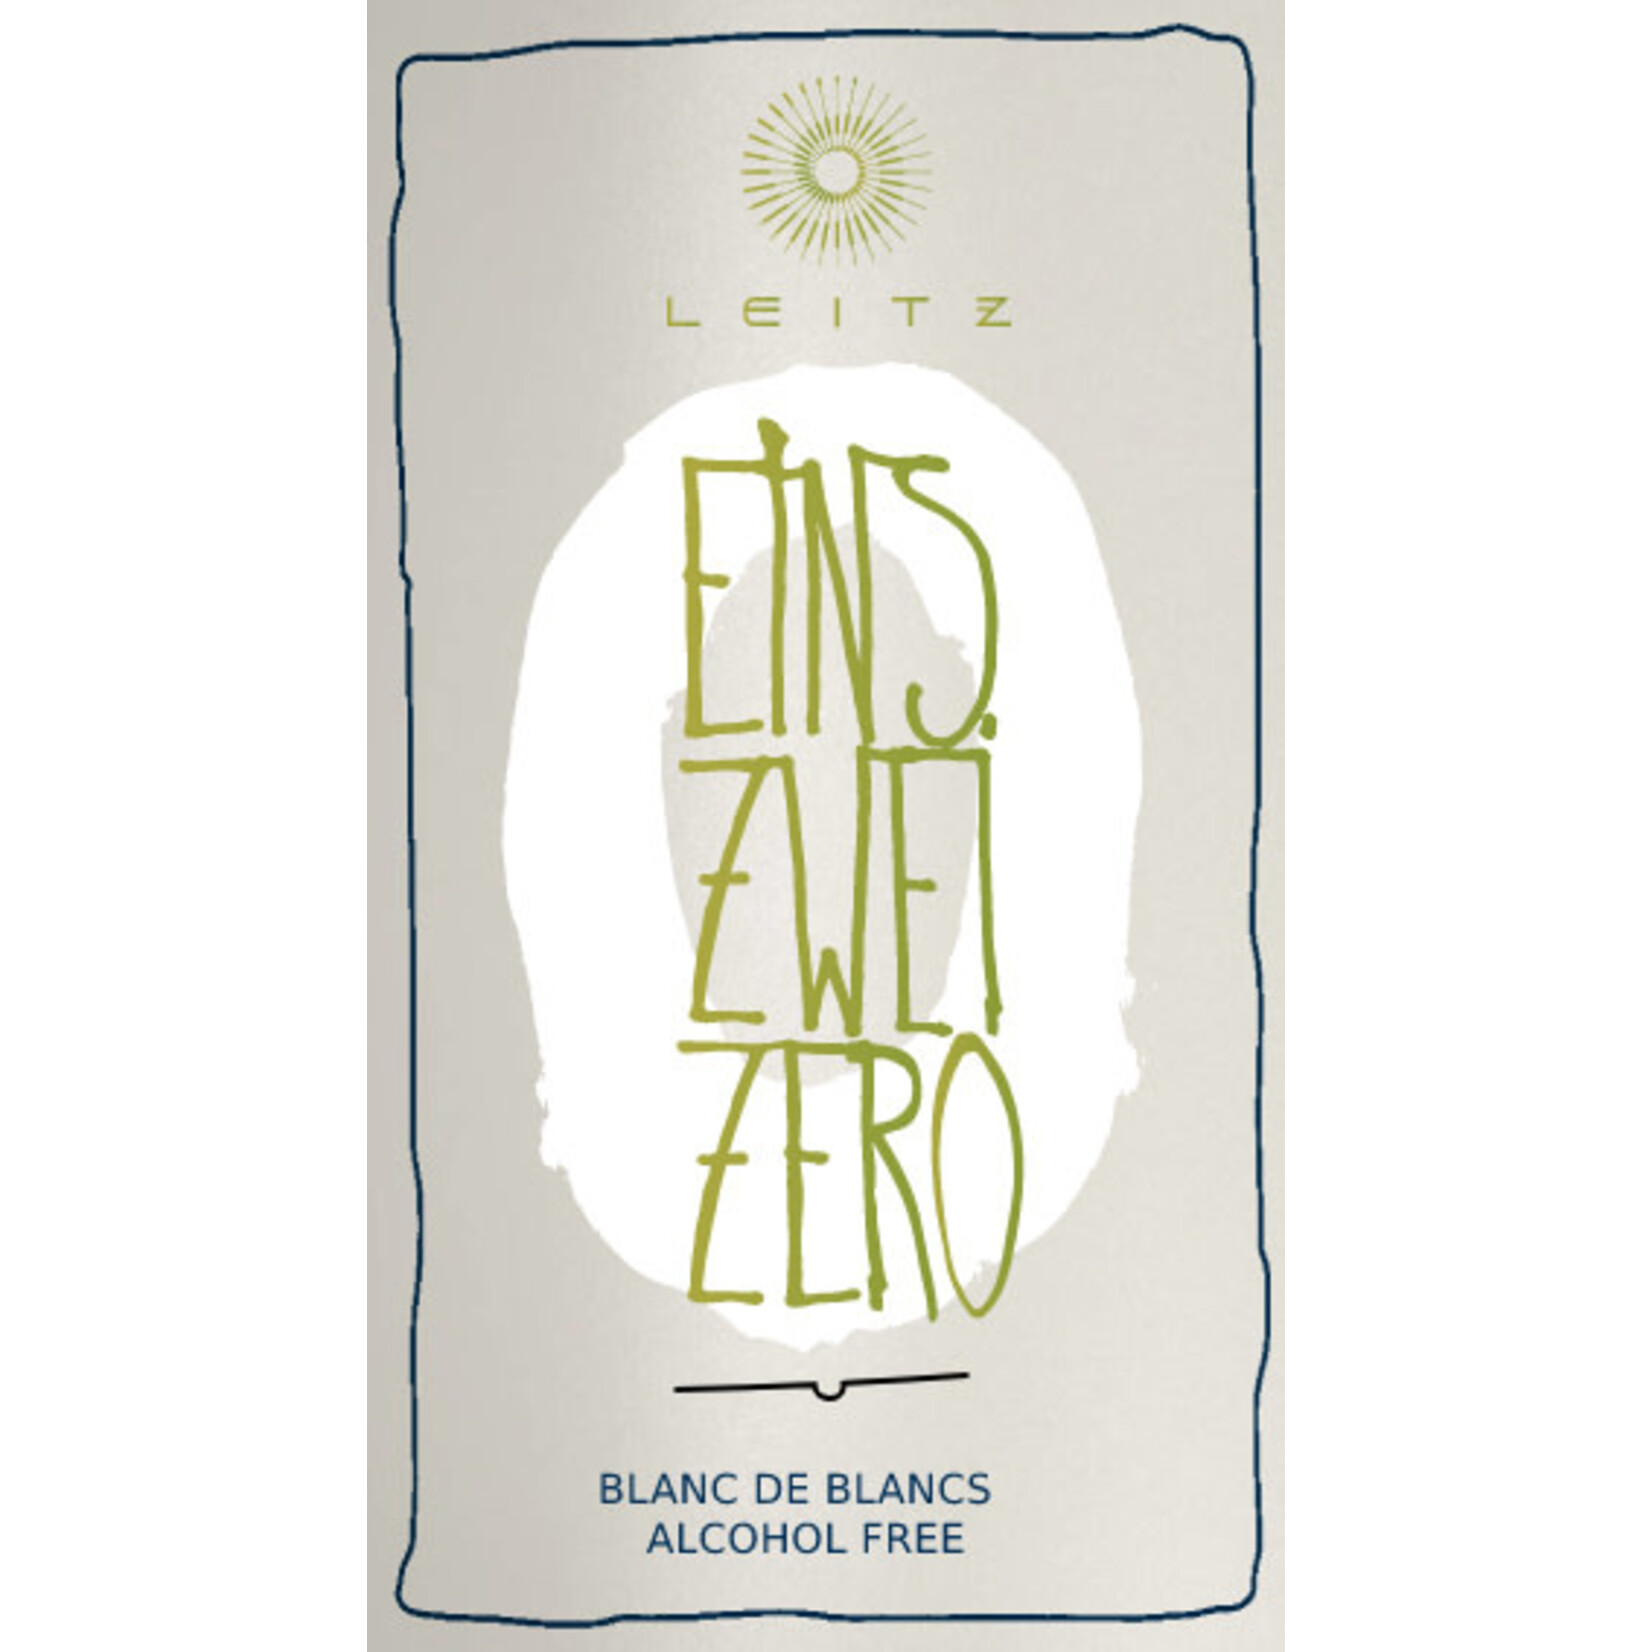 Leitz Leitz Eins Zwei Zero Blanc de Blanc Alcohol Free,  Germany